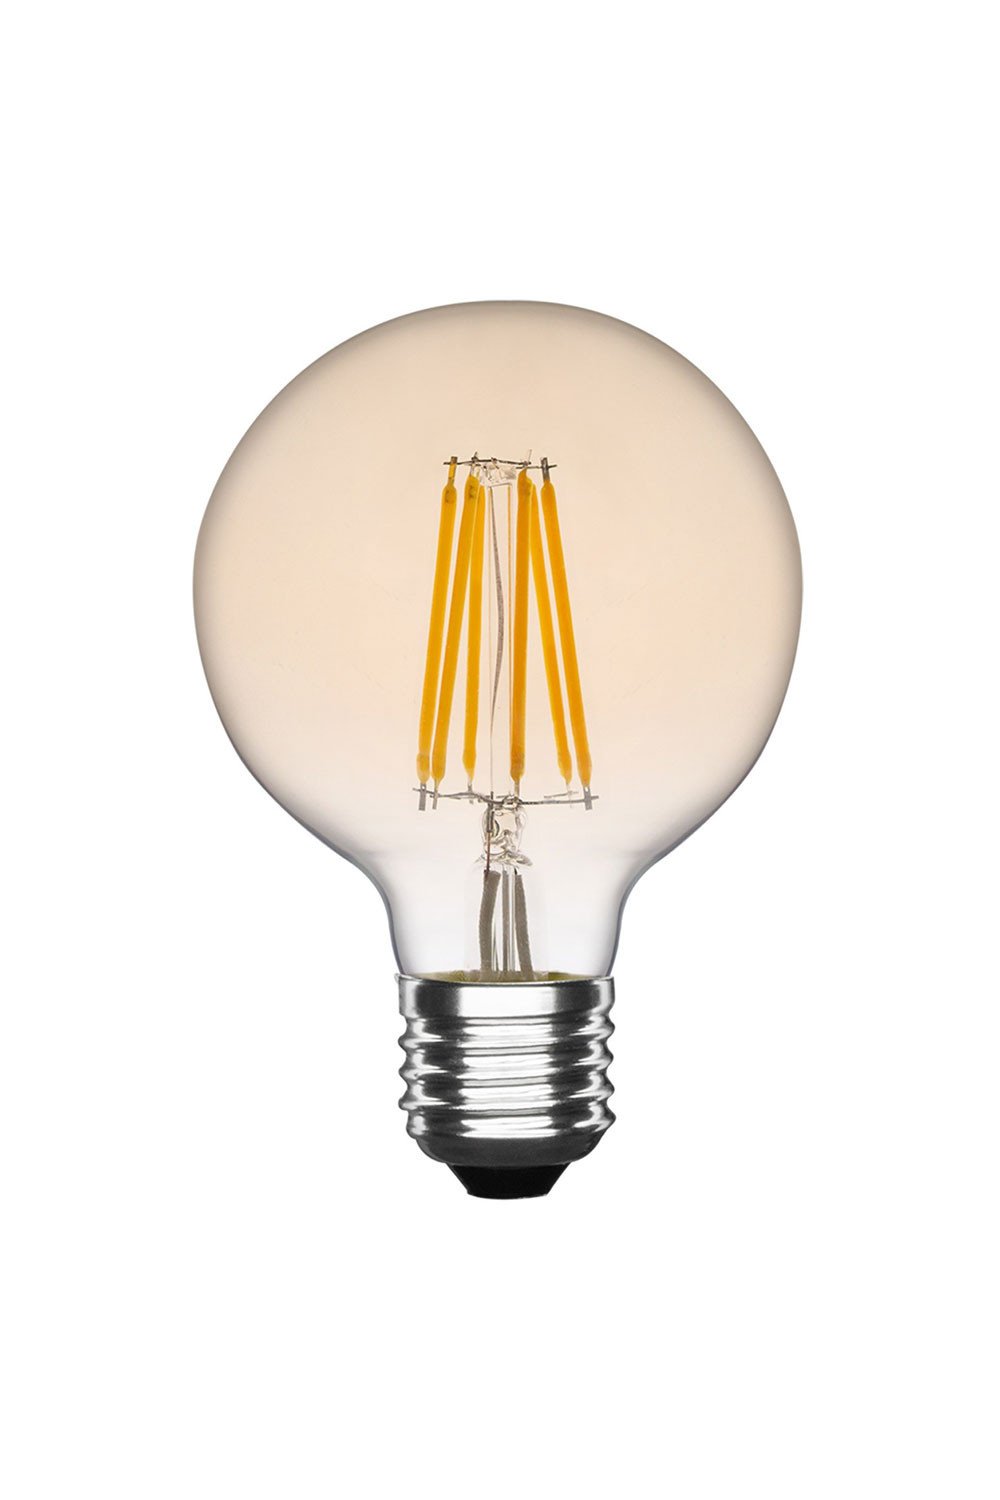 Lâmpada LED Vintage Regulável E27 Degradada Odyss, imagem de galeria 1